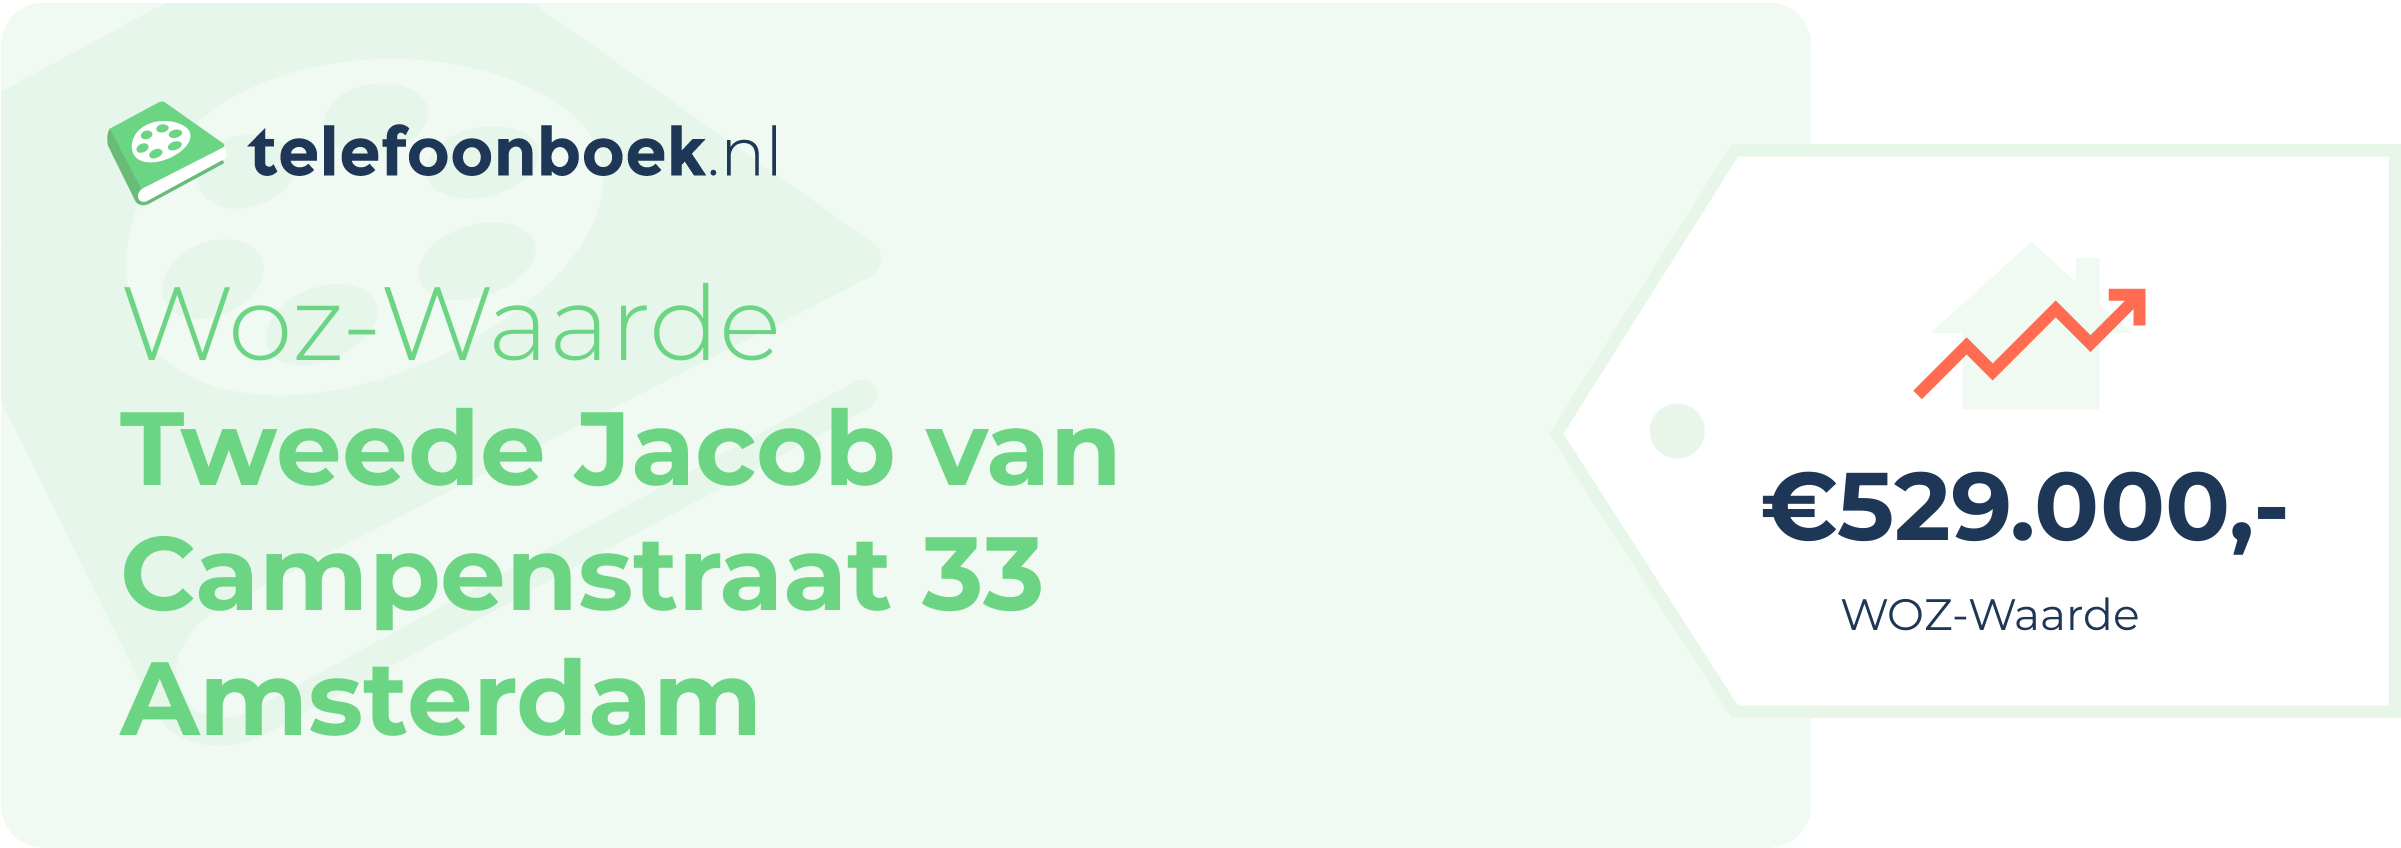 WOZ-waarde Tweede Jacob Van Campenstraat 33 Amsterdam